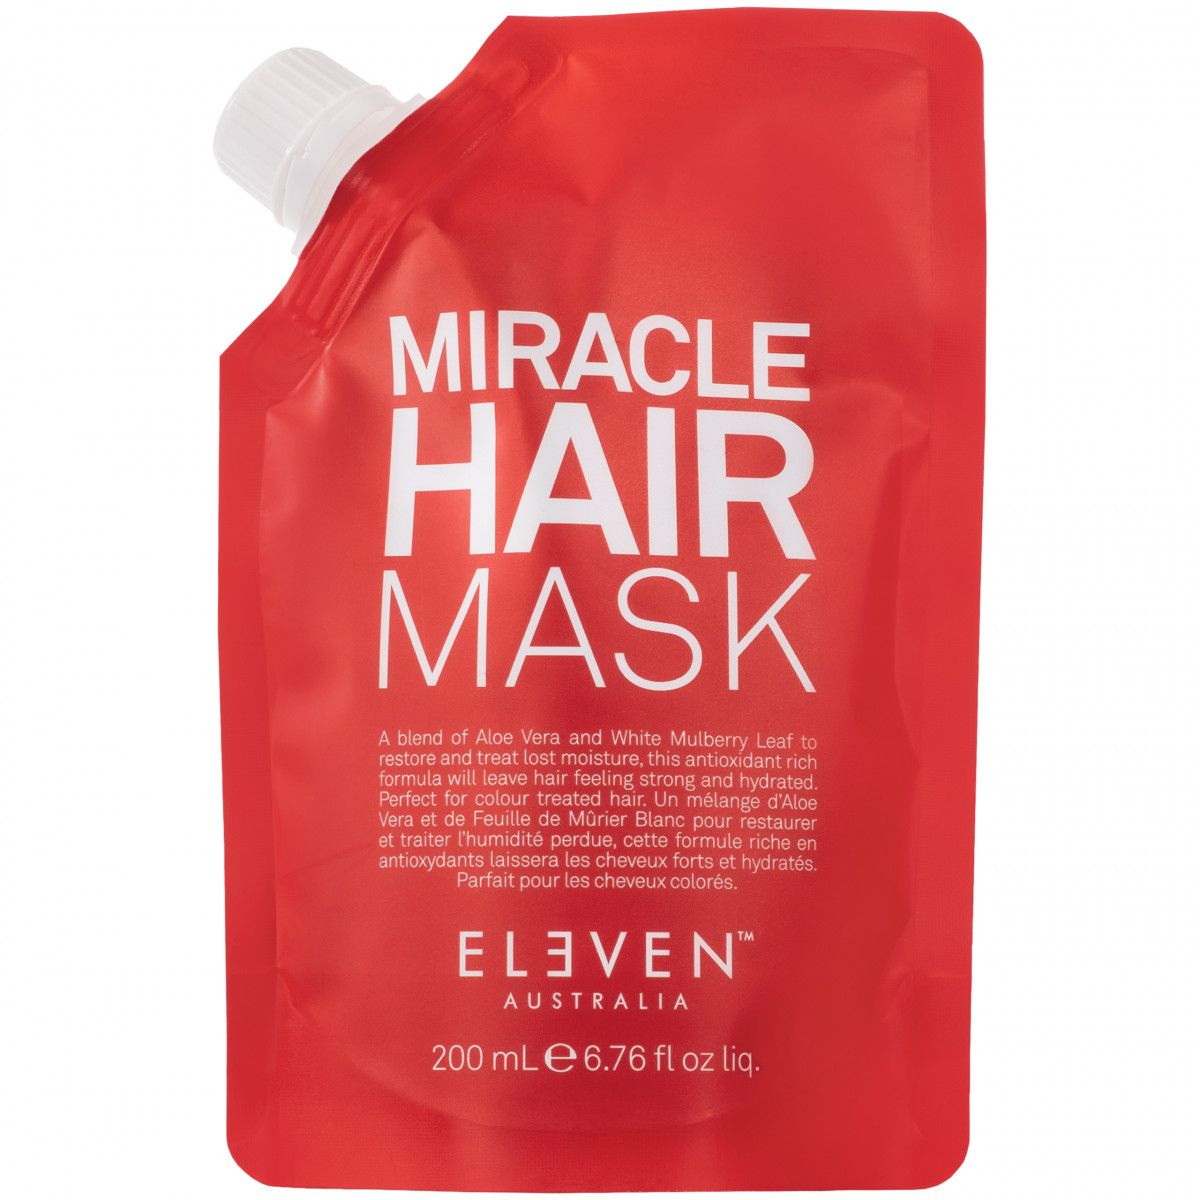 Eleven Australia Miracle Hair Mask - wielozadaniowa maska do włosów zniszczonych, 200ml